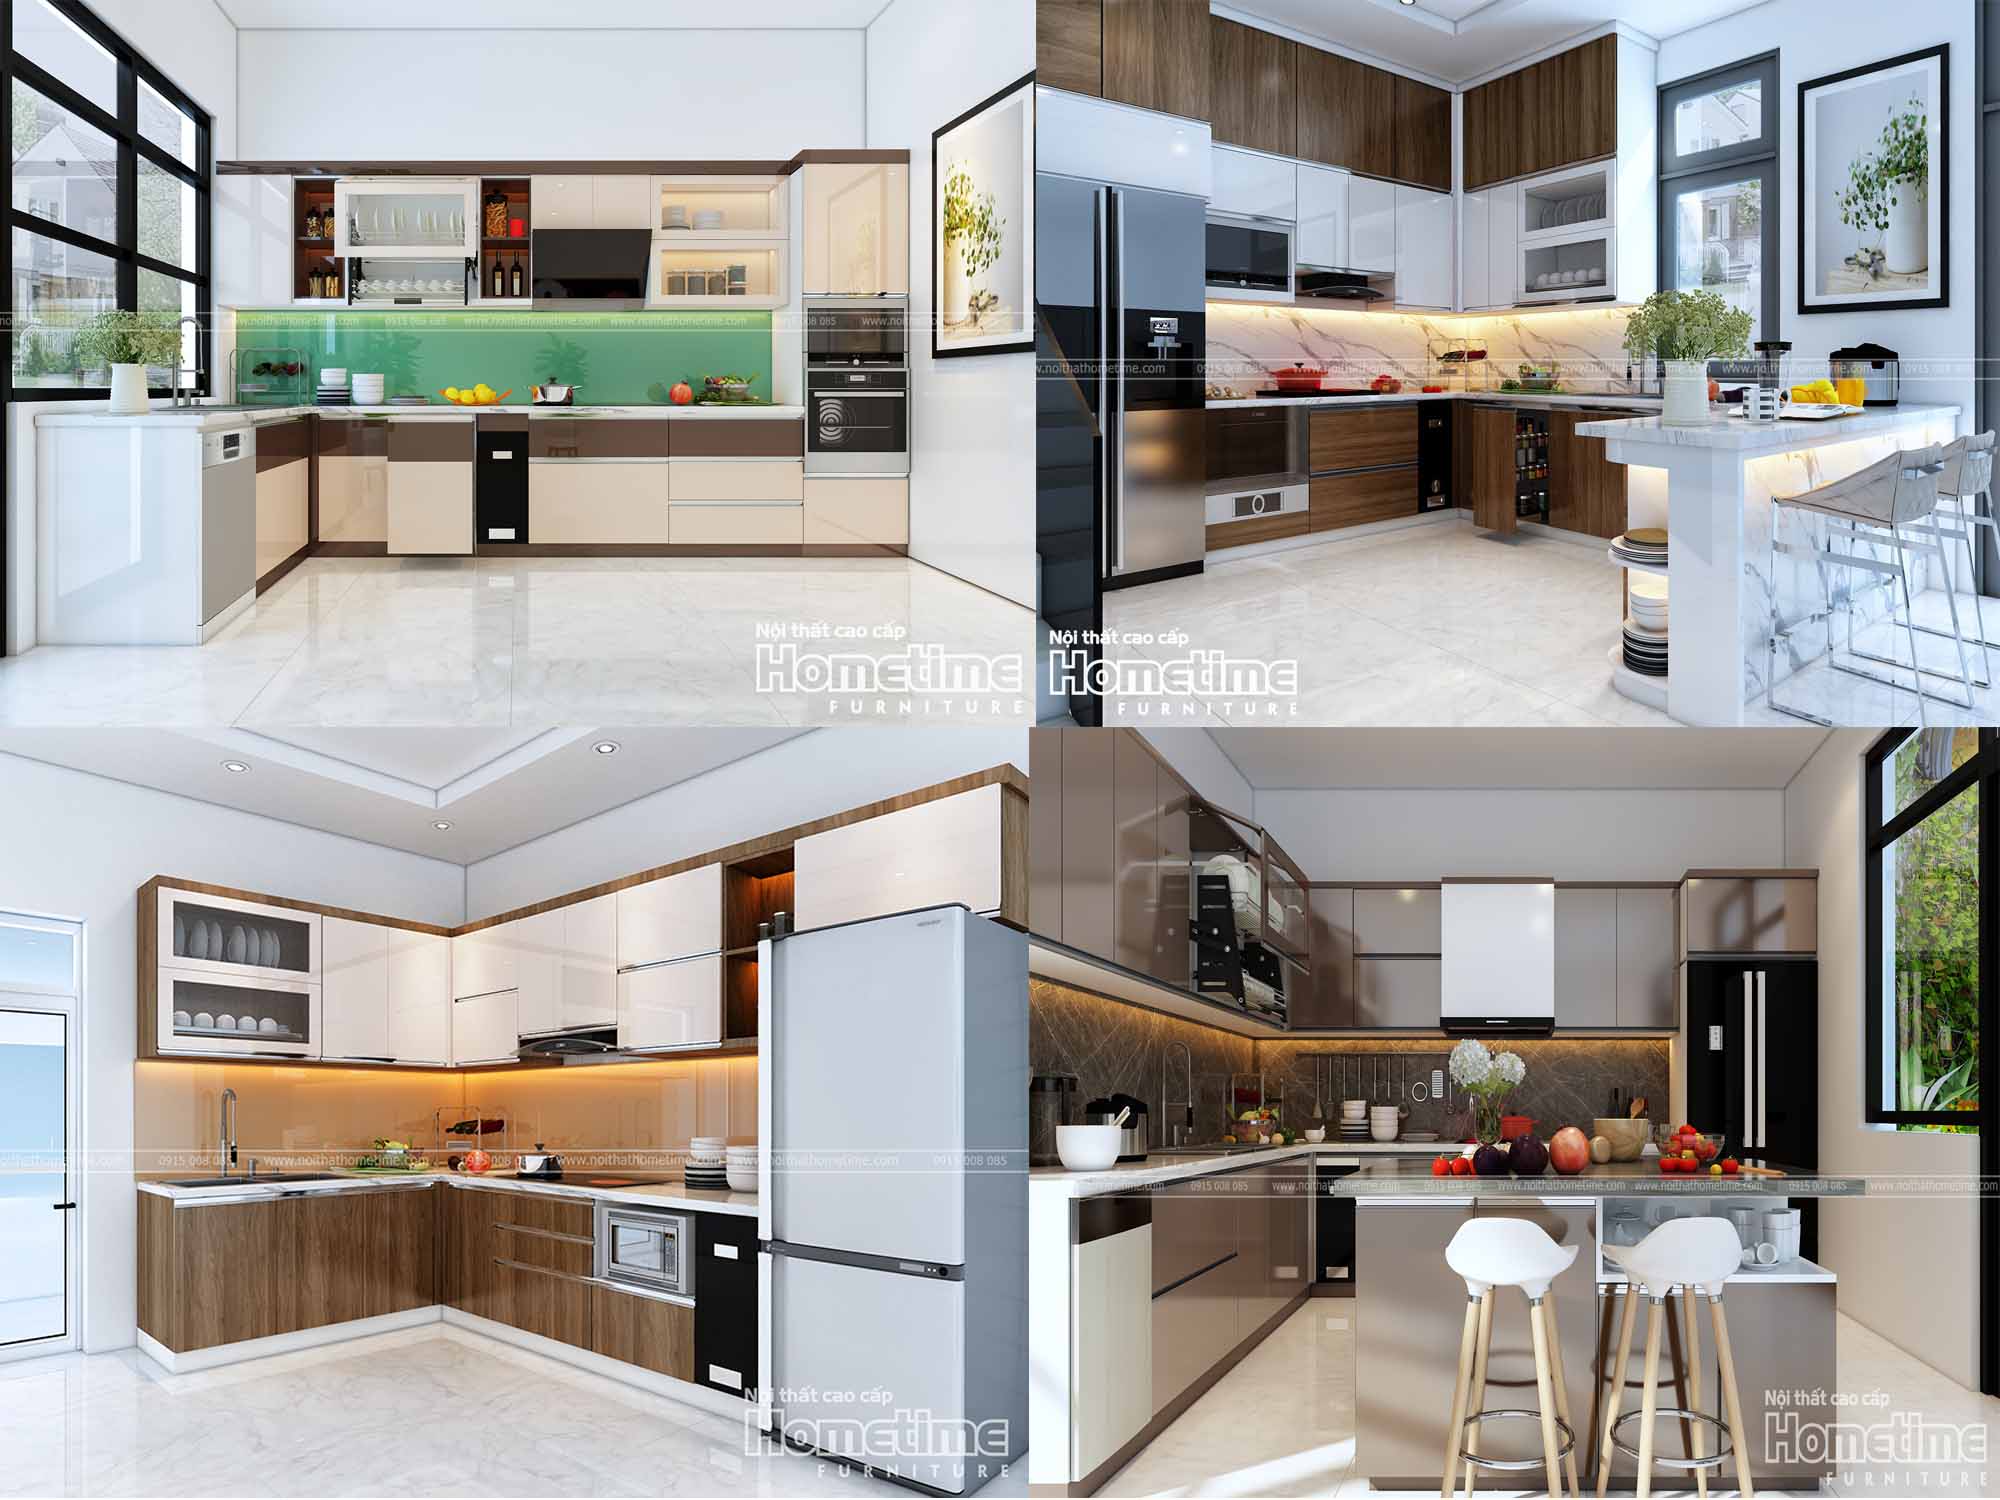 Tủ bếp Hải Phòng với thiết kế đa dạng, chất lượng đảm bảo giúp không gian bếp sáng tạo và tiện nghi hơn. Sản phẩm sẵn có tại showroom với nhiều phương án lựa chọn đáp ứng nhu cầu của khách hàng.